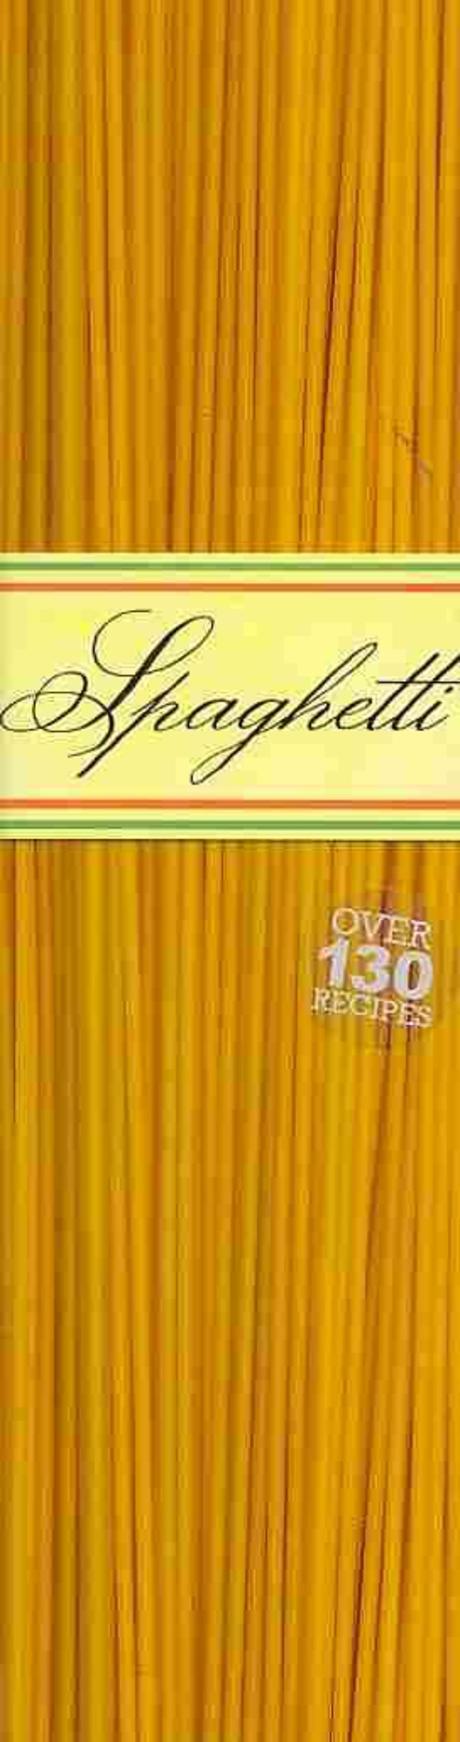 Spaghetti : Over 130 Recipes